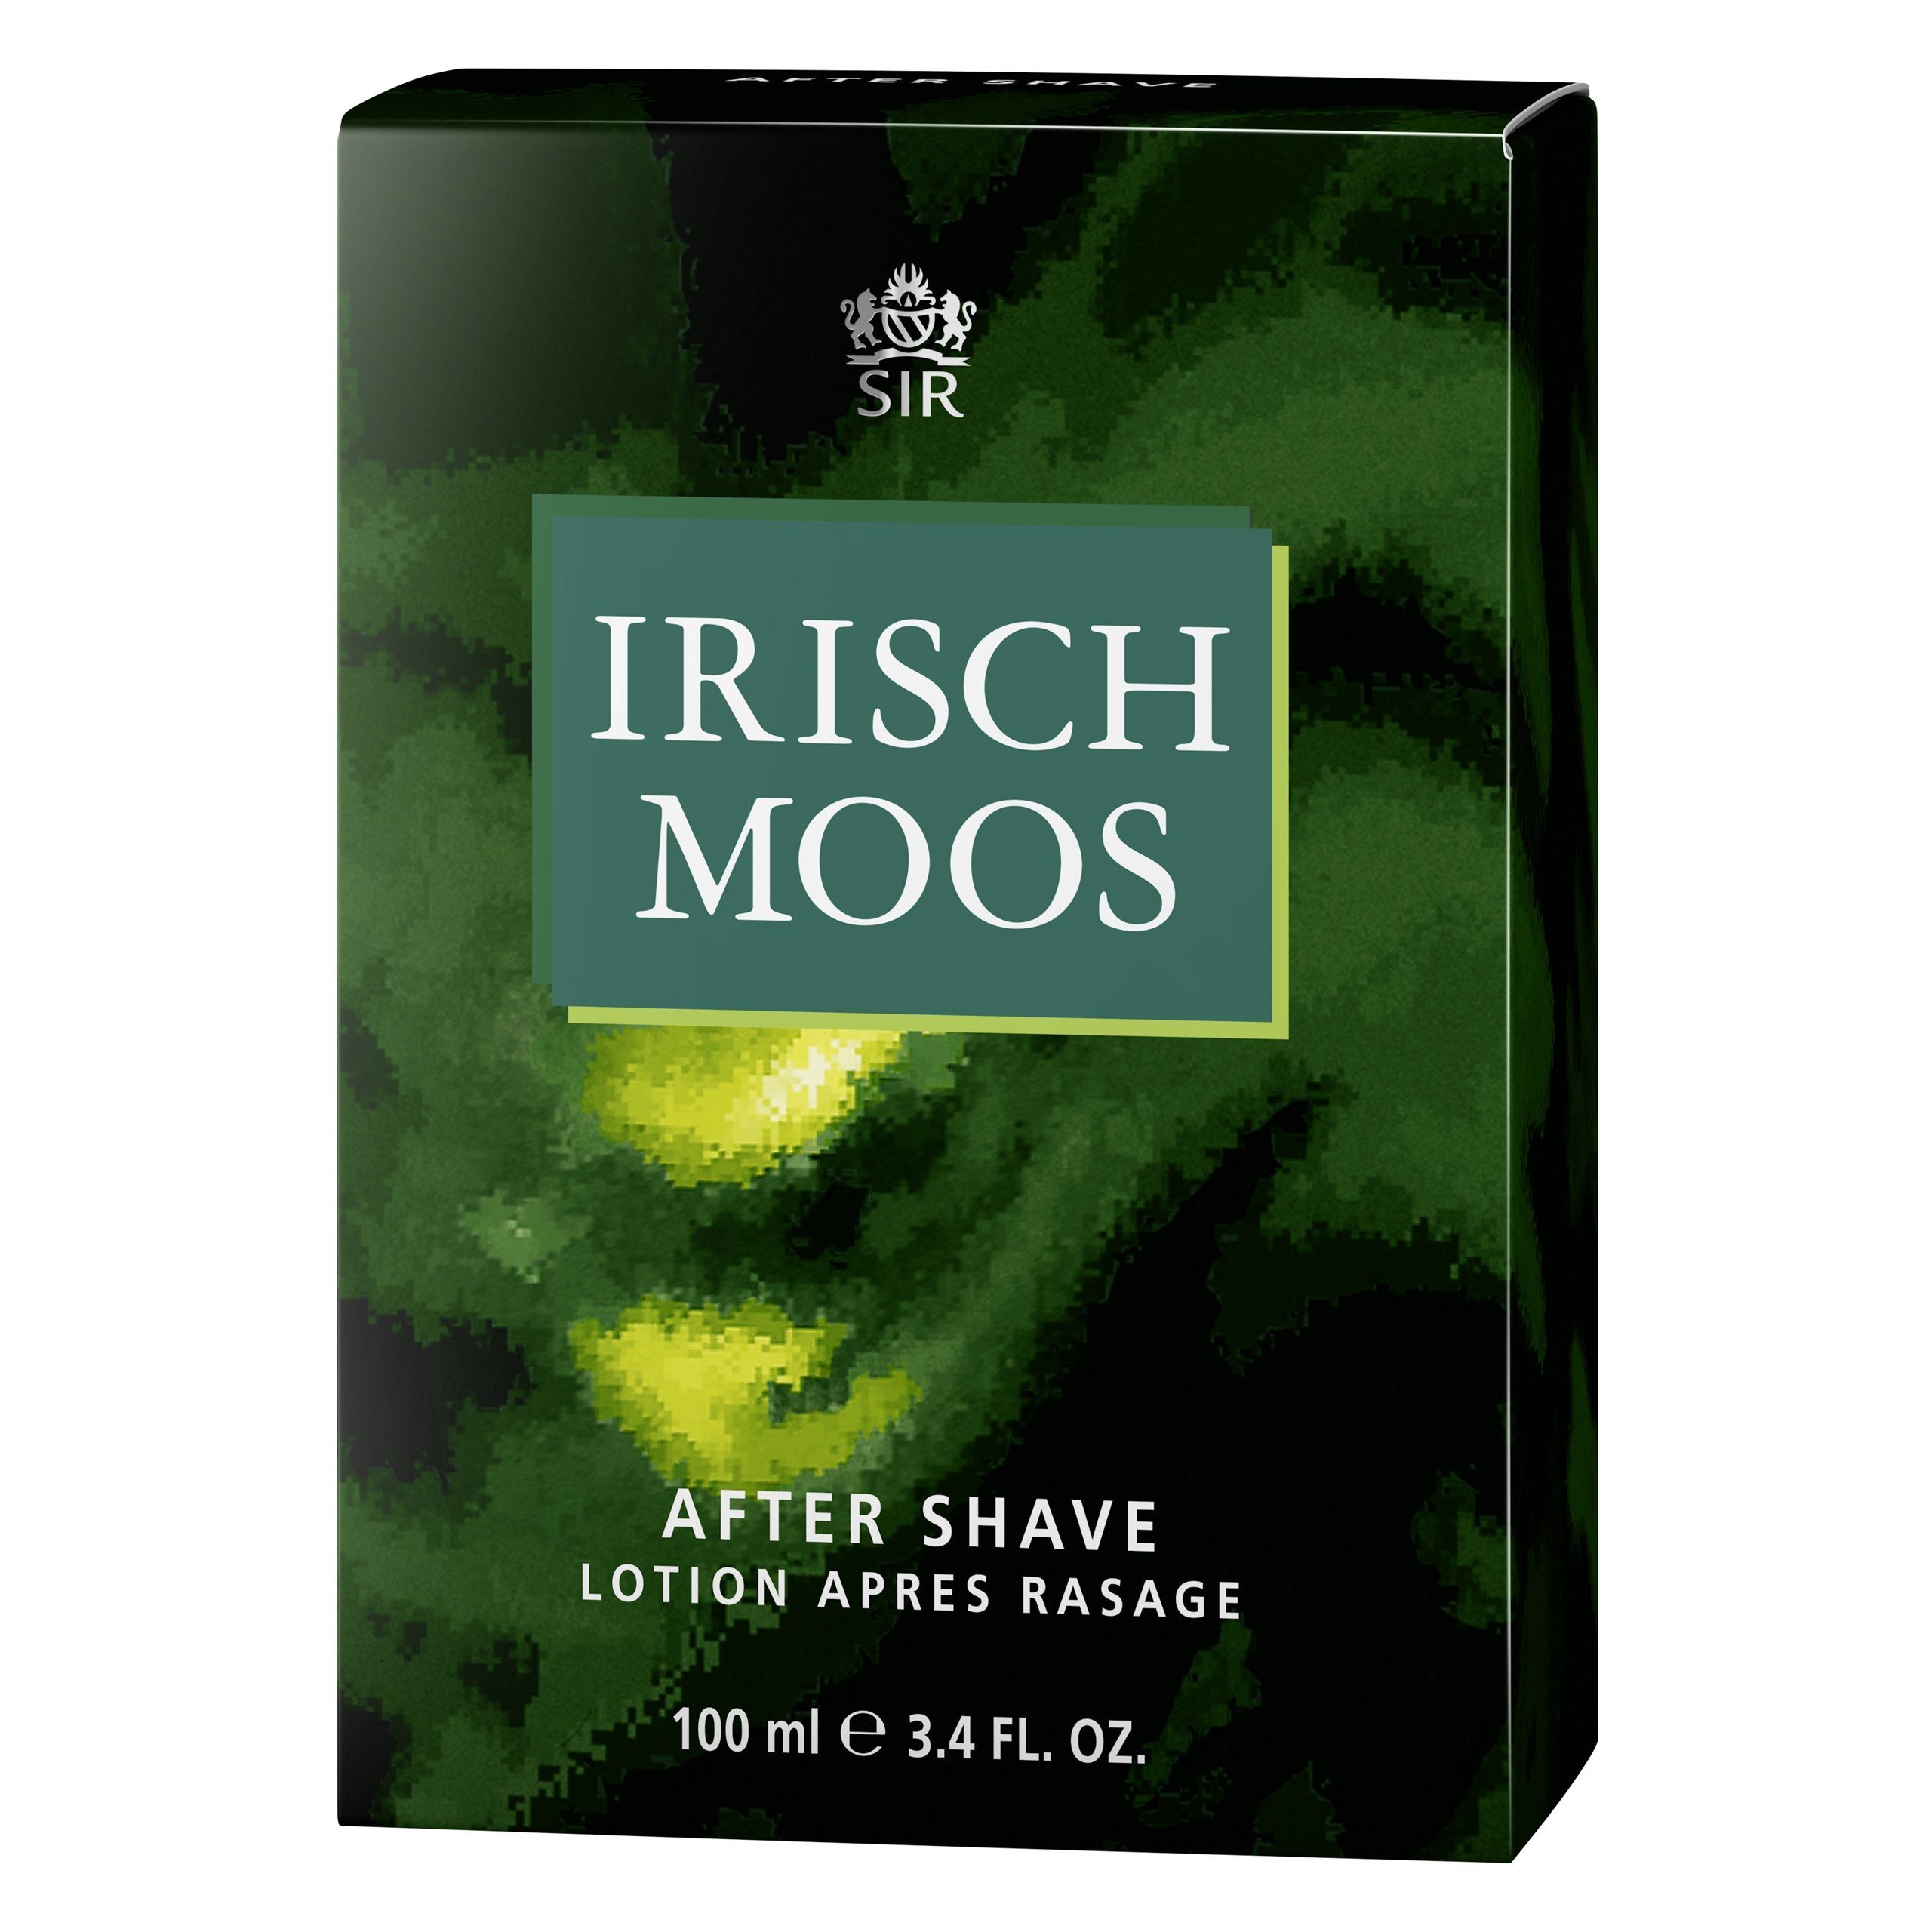 Sir Irisch Moos Lotion Shave Gesichts-Reinigungslotion IRISCH After MOOS ml 100 SIR